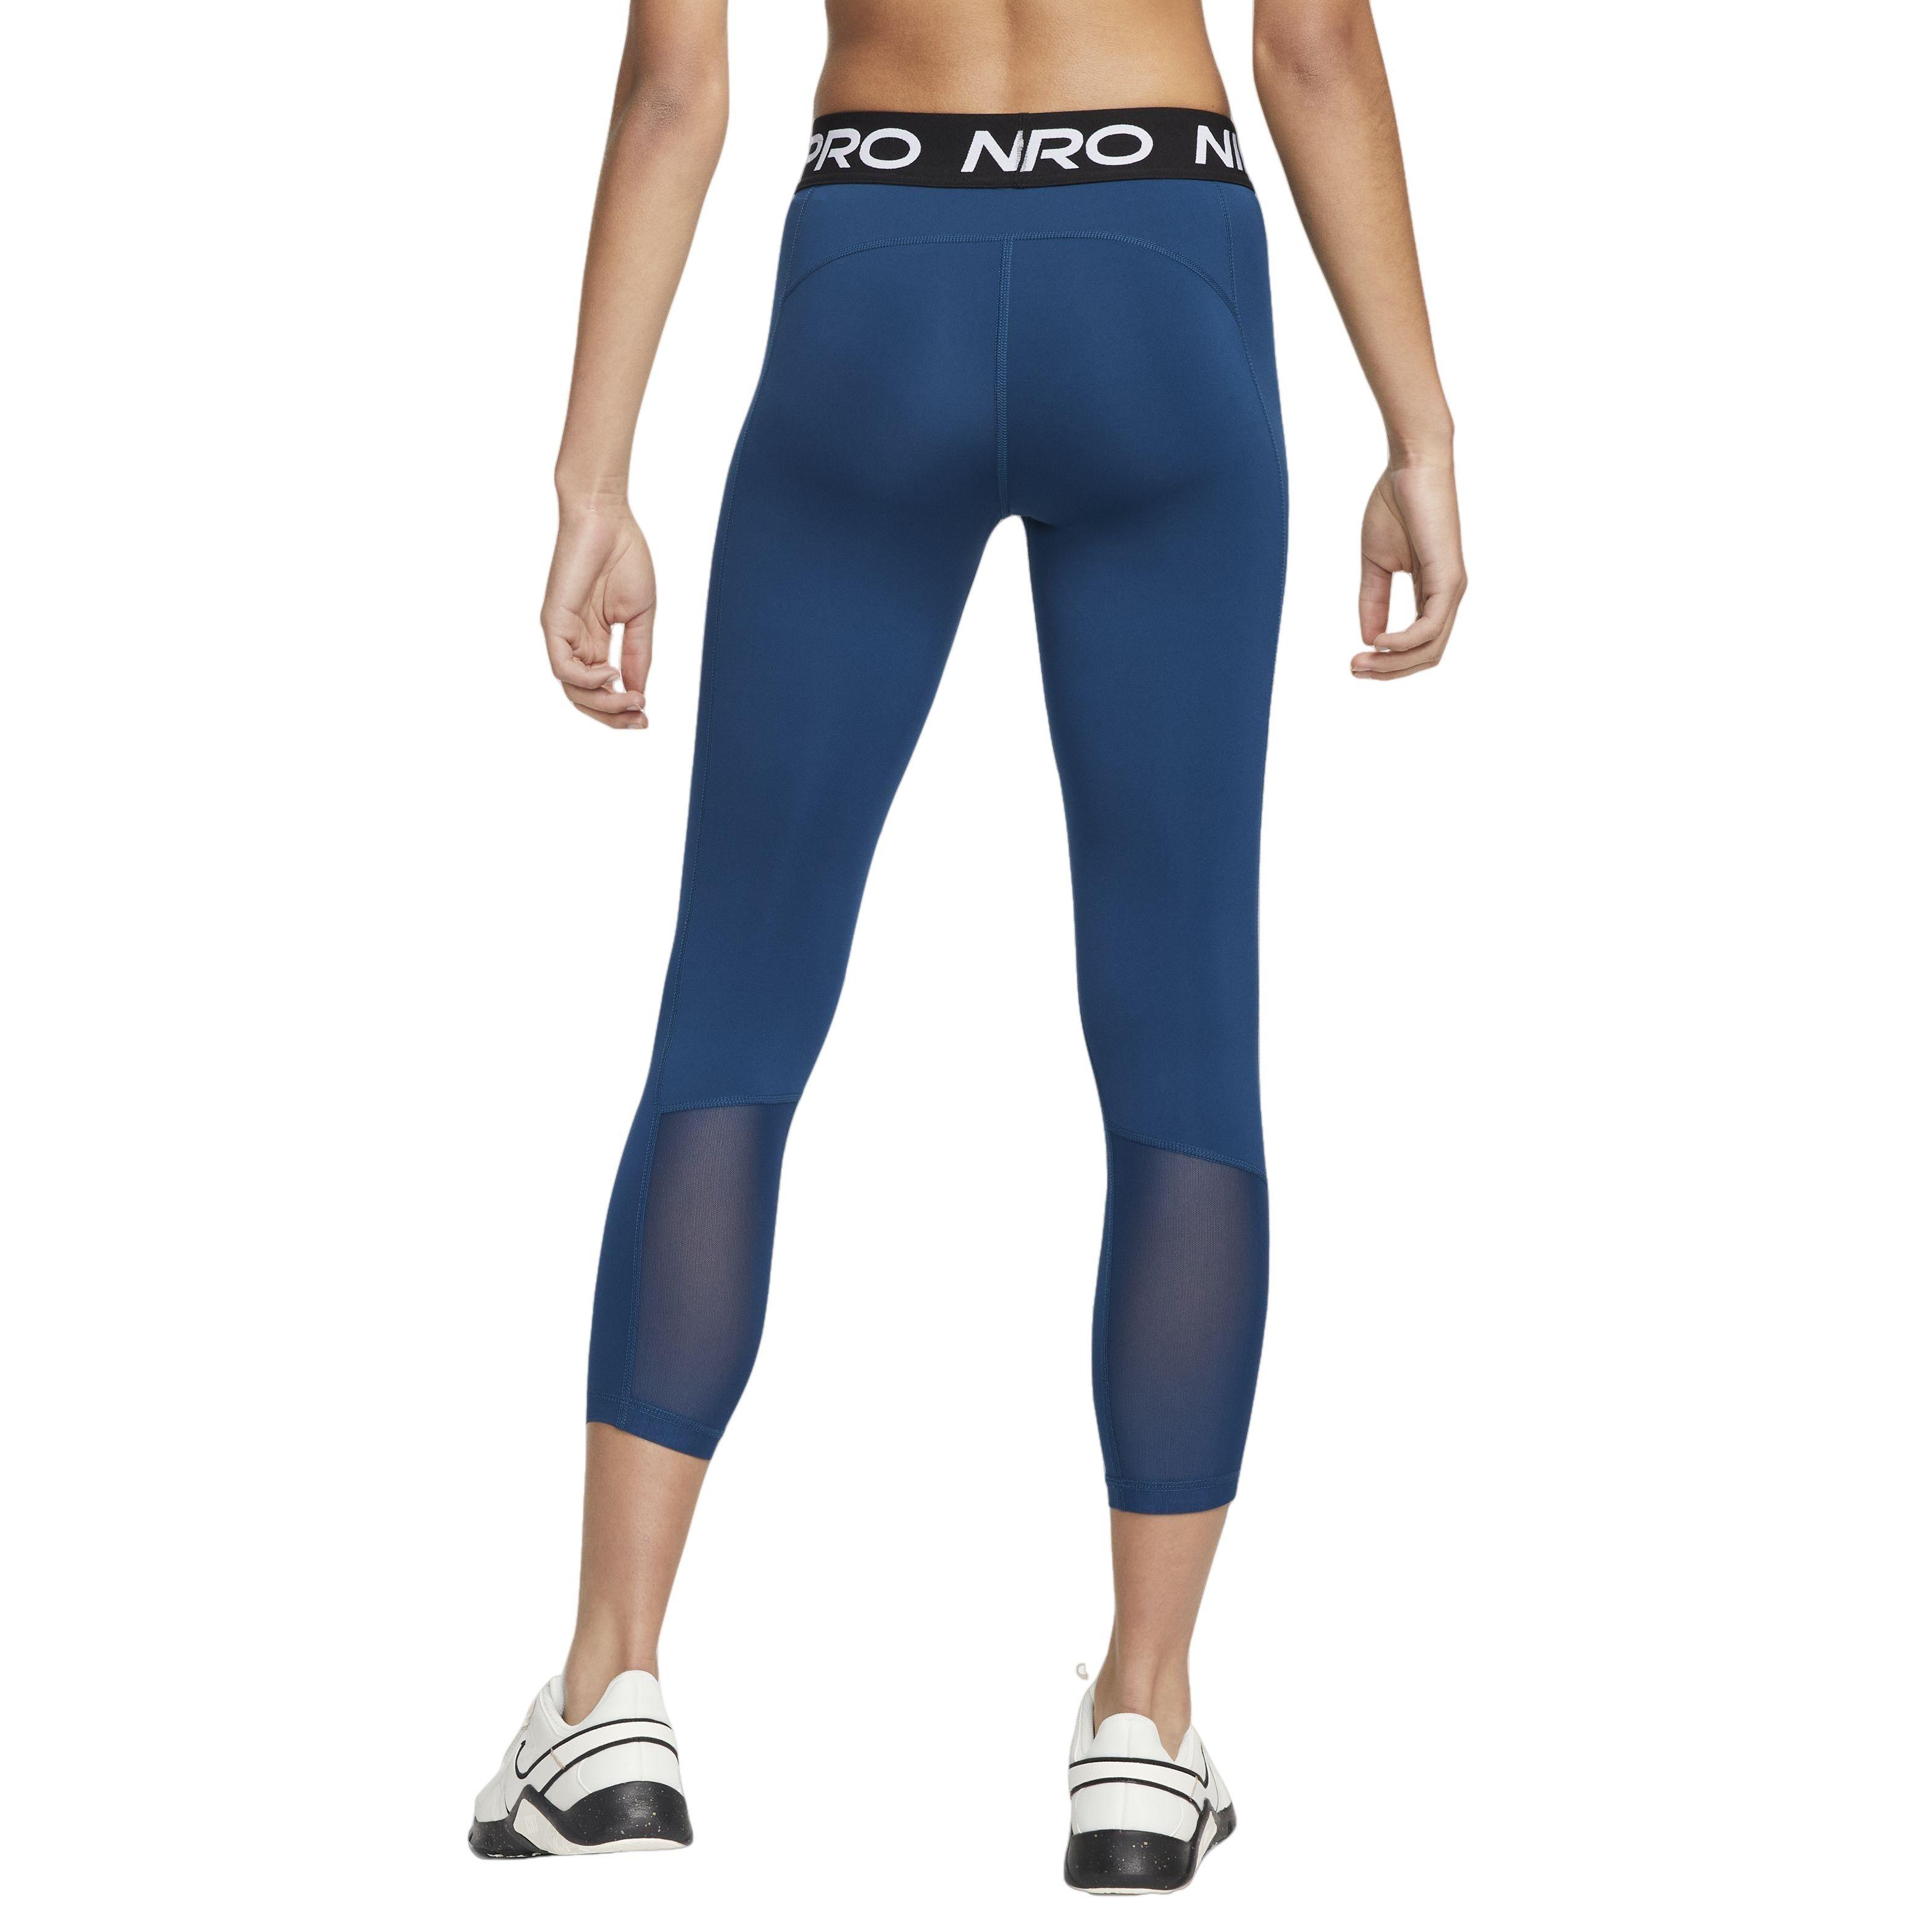 Women's Leggings & Yoga Pants, Workout Apparel - Hibbett